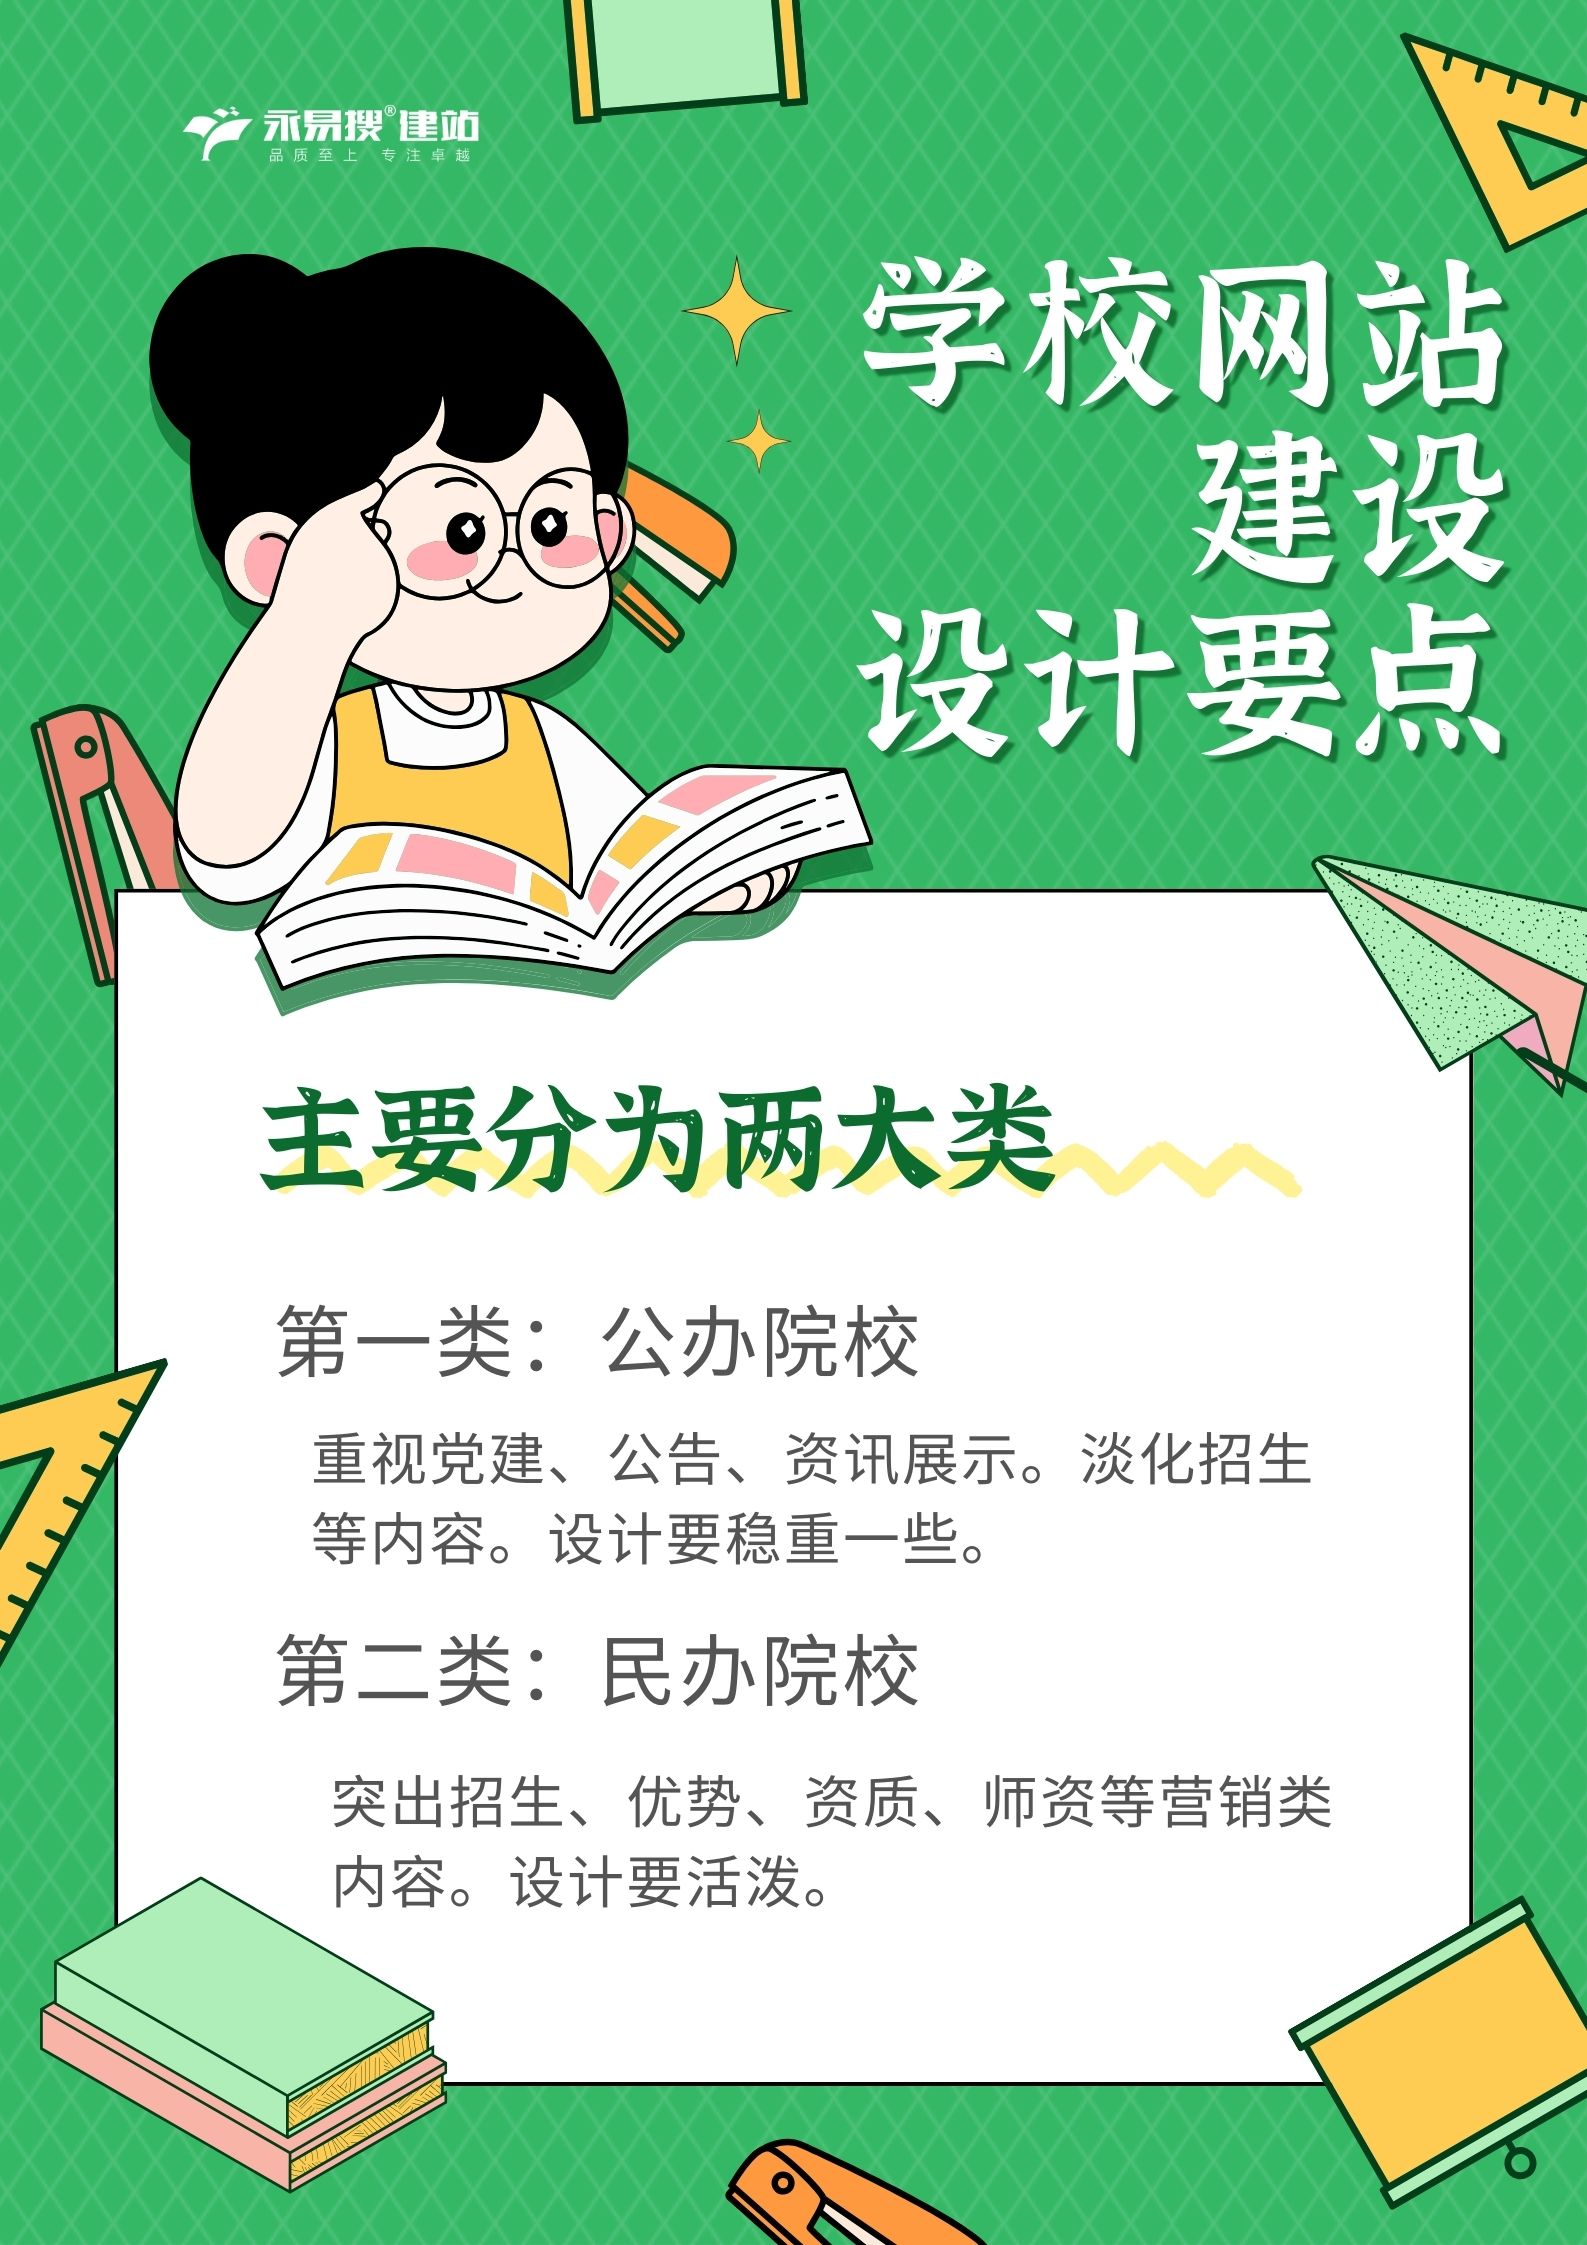 郑州做学校网站建设的公司 专注提供一站式学校网站制作服务(图3)